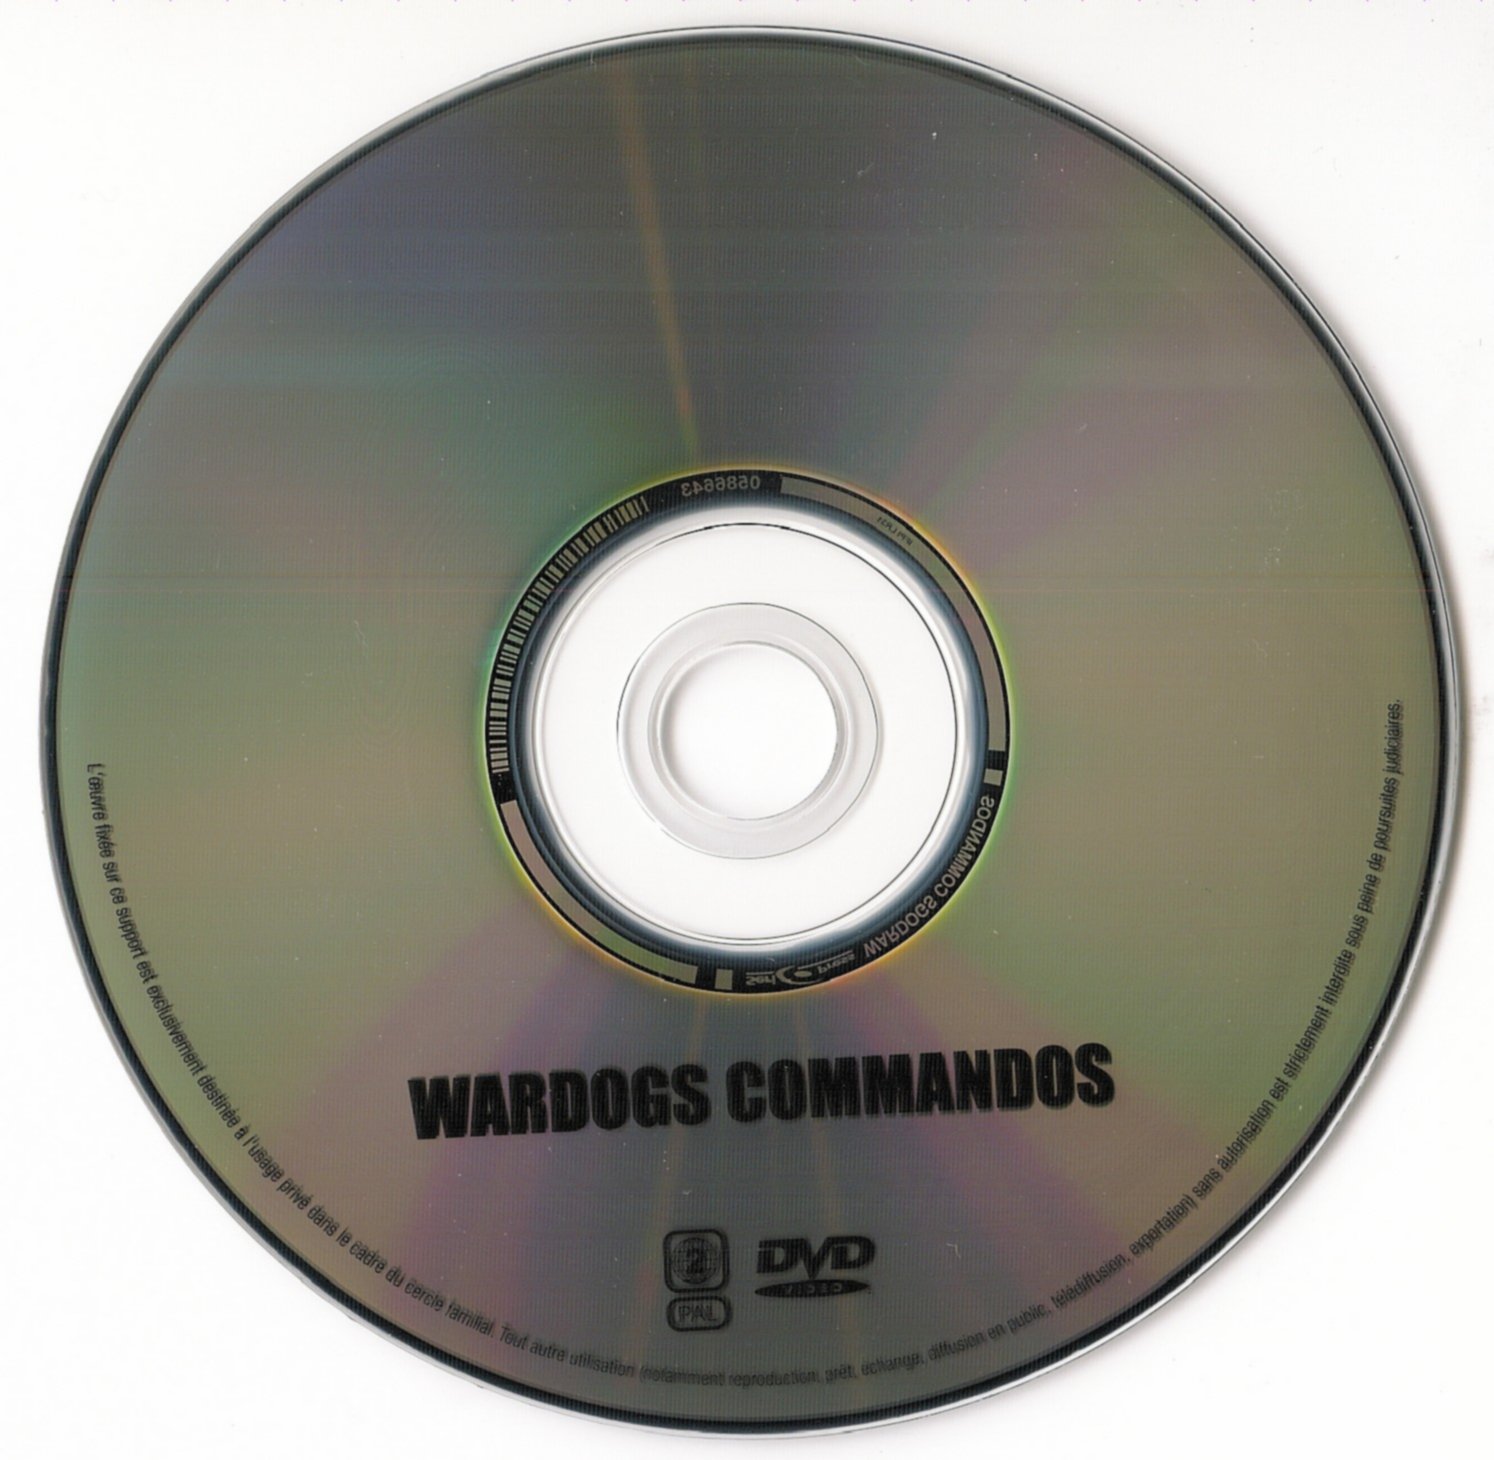 Wardogs commandos